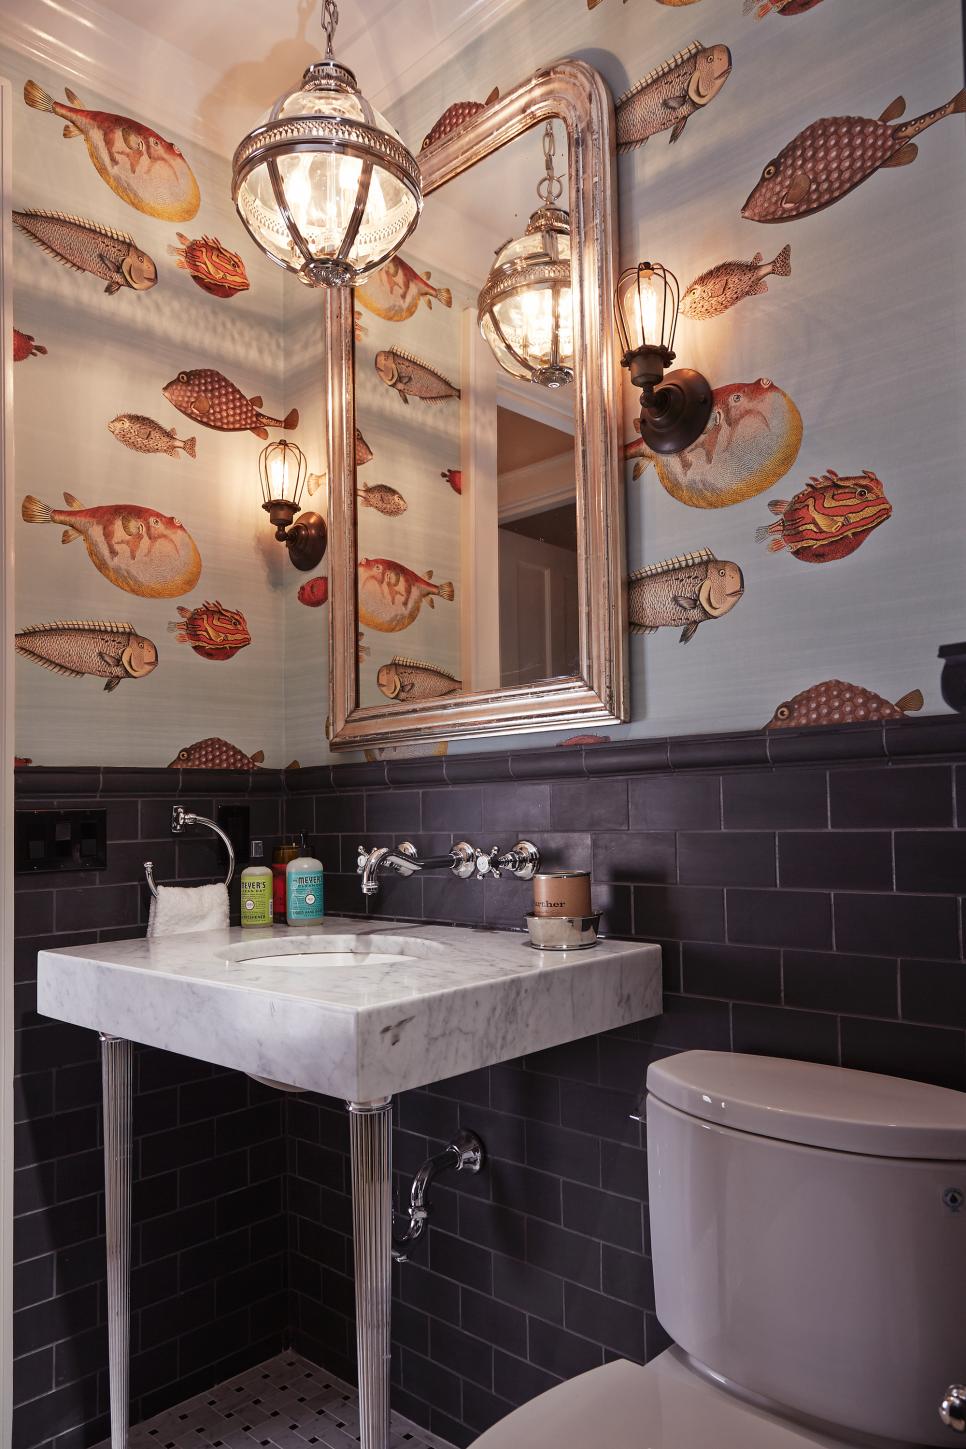 papel tapiz de pescado para baño,habitación,diseño de interiores,loseta,propiedad,mueble